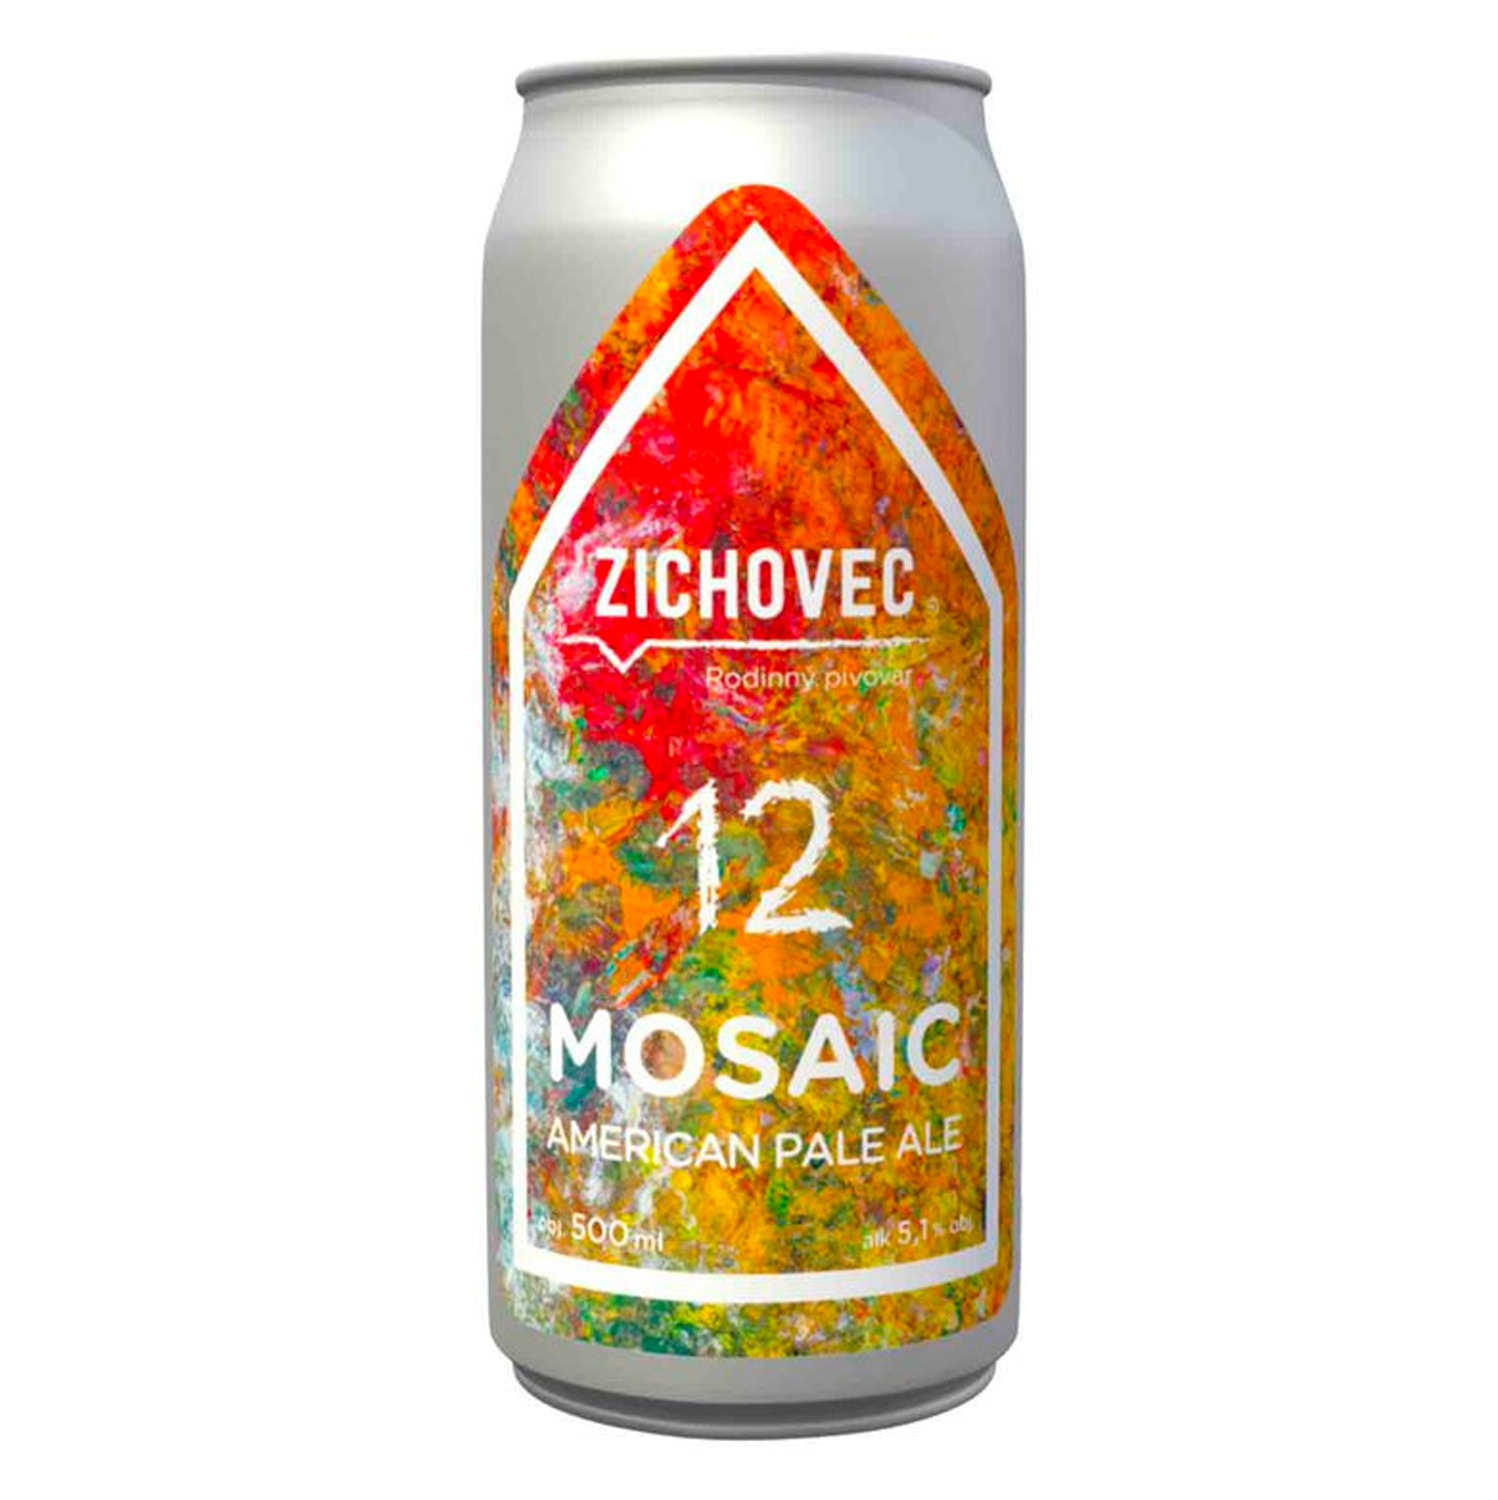 SALE Zichovec Mosaic 12 American Pale Ale